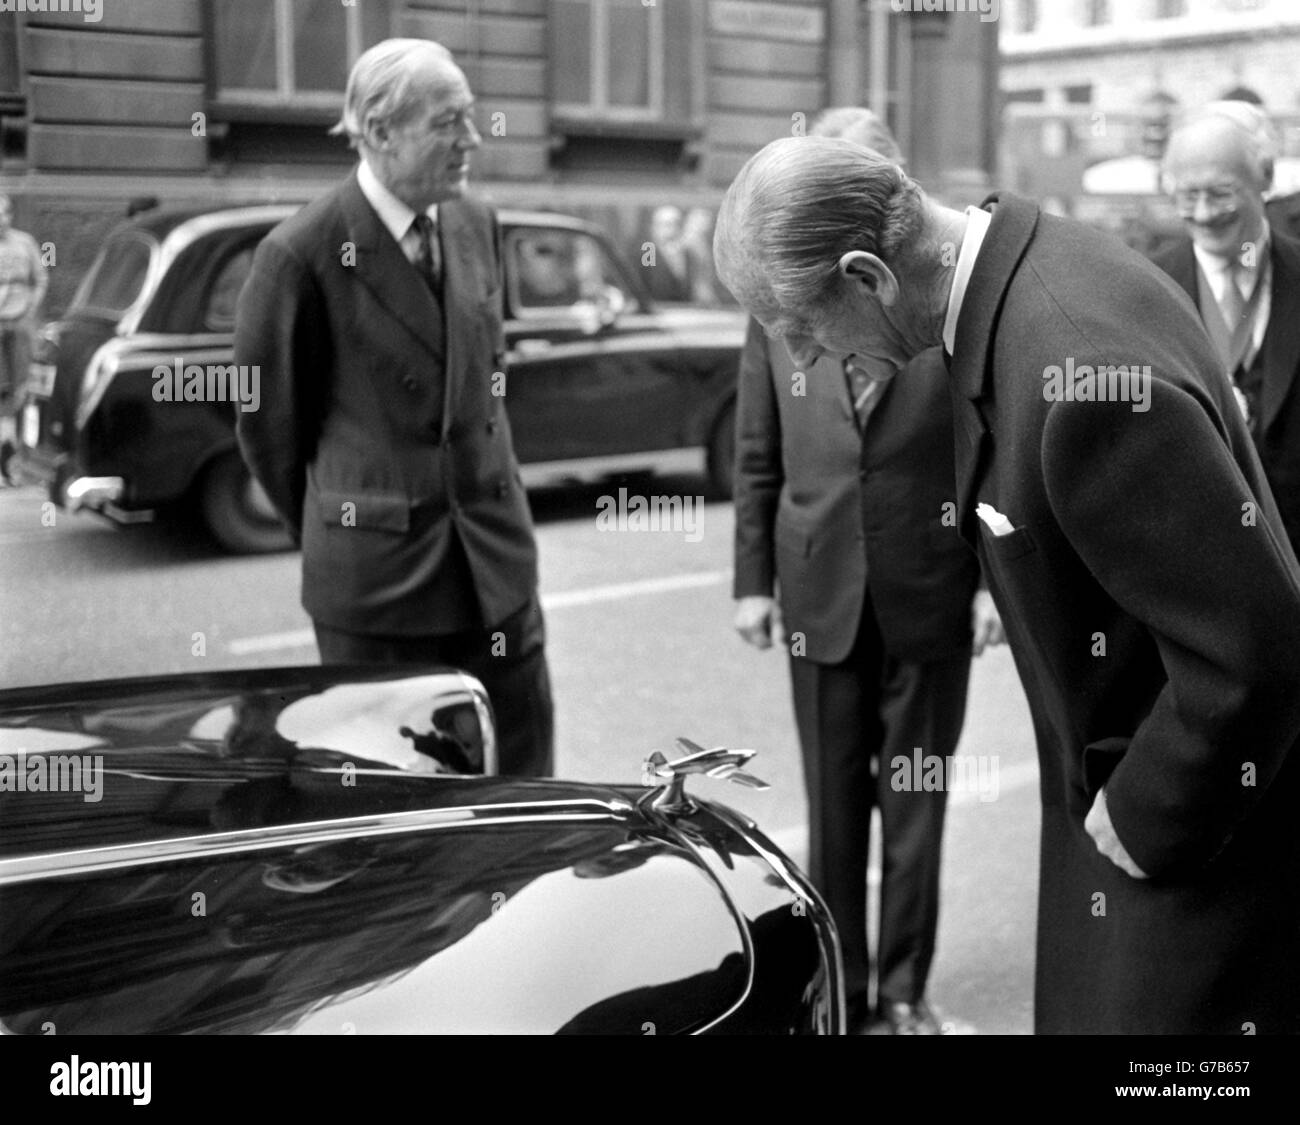 Der Herzog von Edinburgh bewundert das Modell eines Hurrikans auf der Motorhaube eines 1963 Alvis, der einst im Besitz des Kriegsjägers Douglas Bader vor dem Mansion House in London war, als er an einem Mittagessen der Douglas Bader Foundation teilnahm. Stockfoto